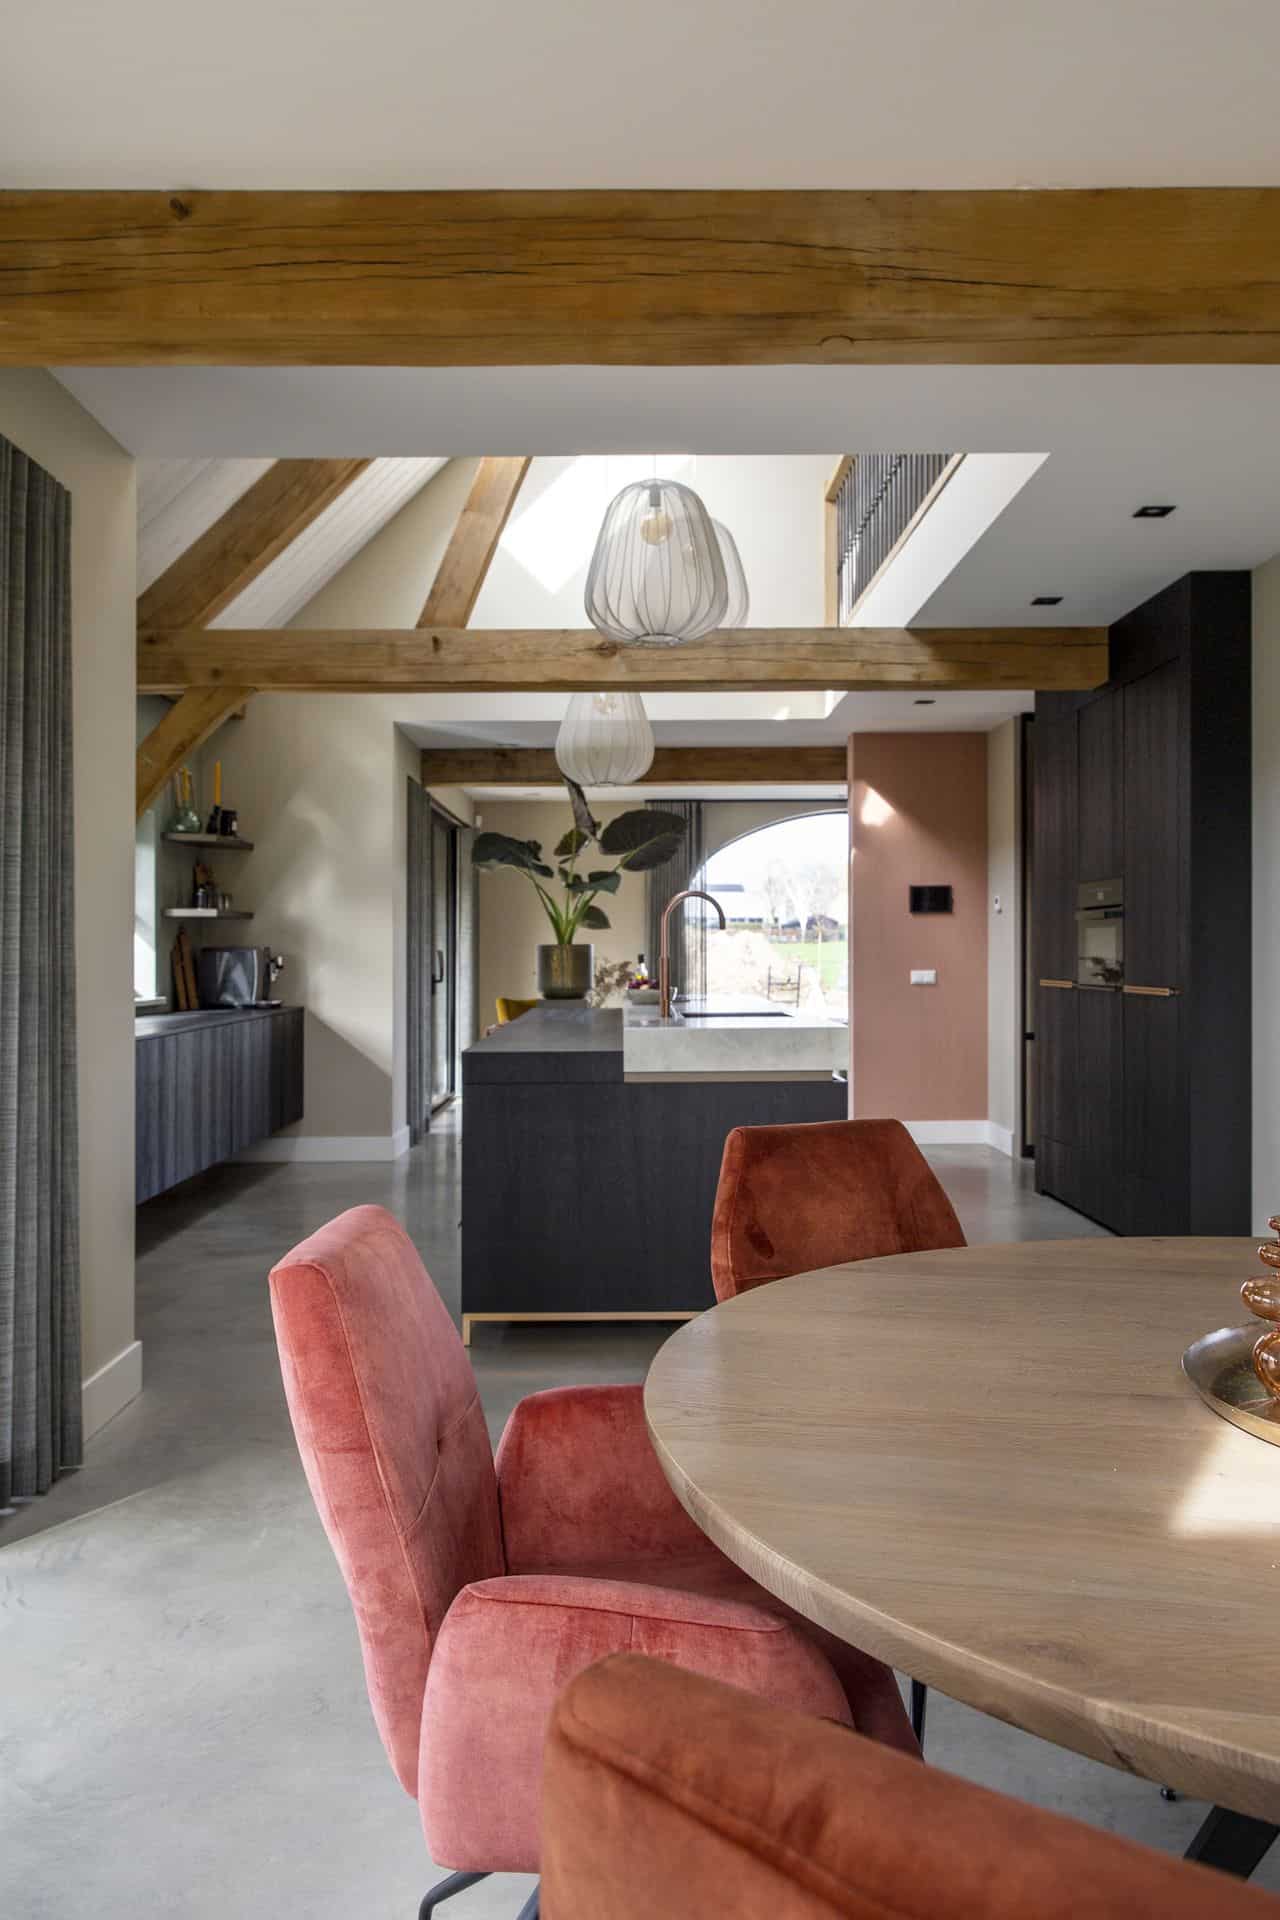 Nieuw gebouwde boerderij in Horst met een gevlinderde betonvloer. In combinatie met een zwarte keuken, houten balken aan het plafond, een houten tafel met daarom roze stoelen.